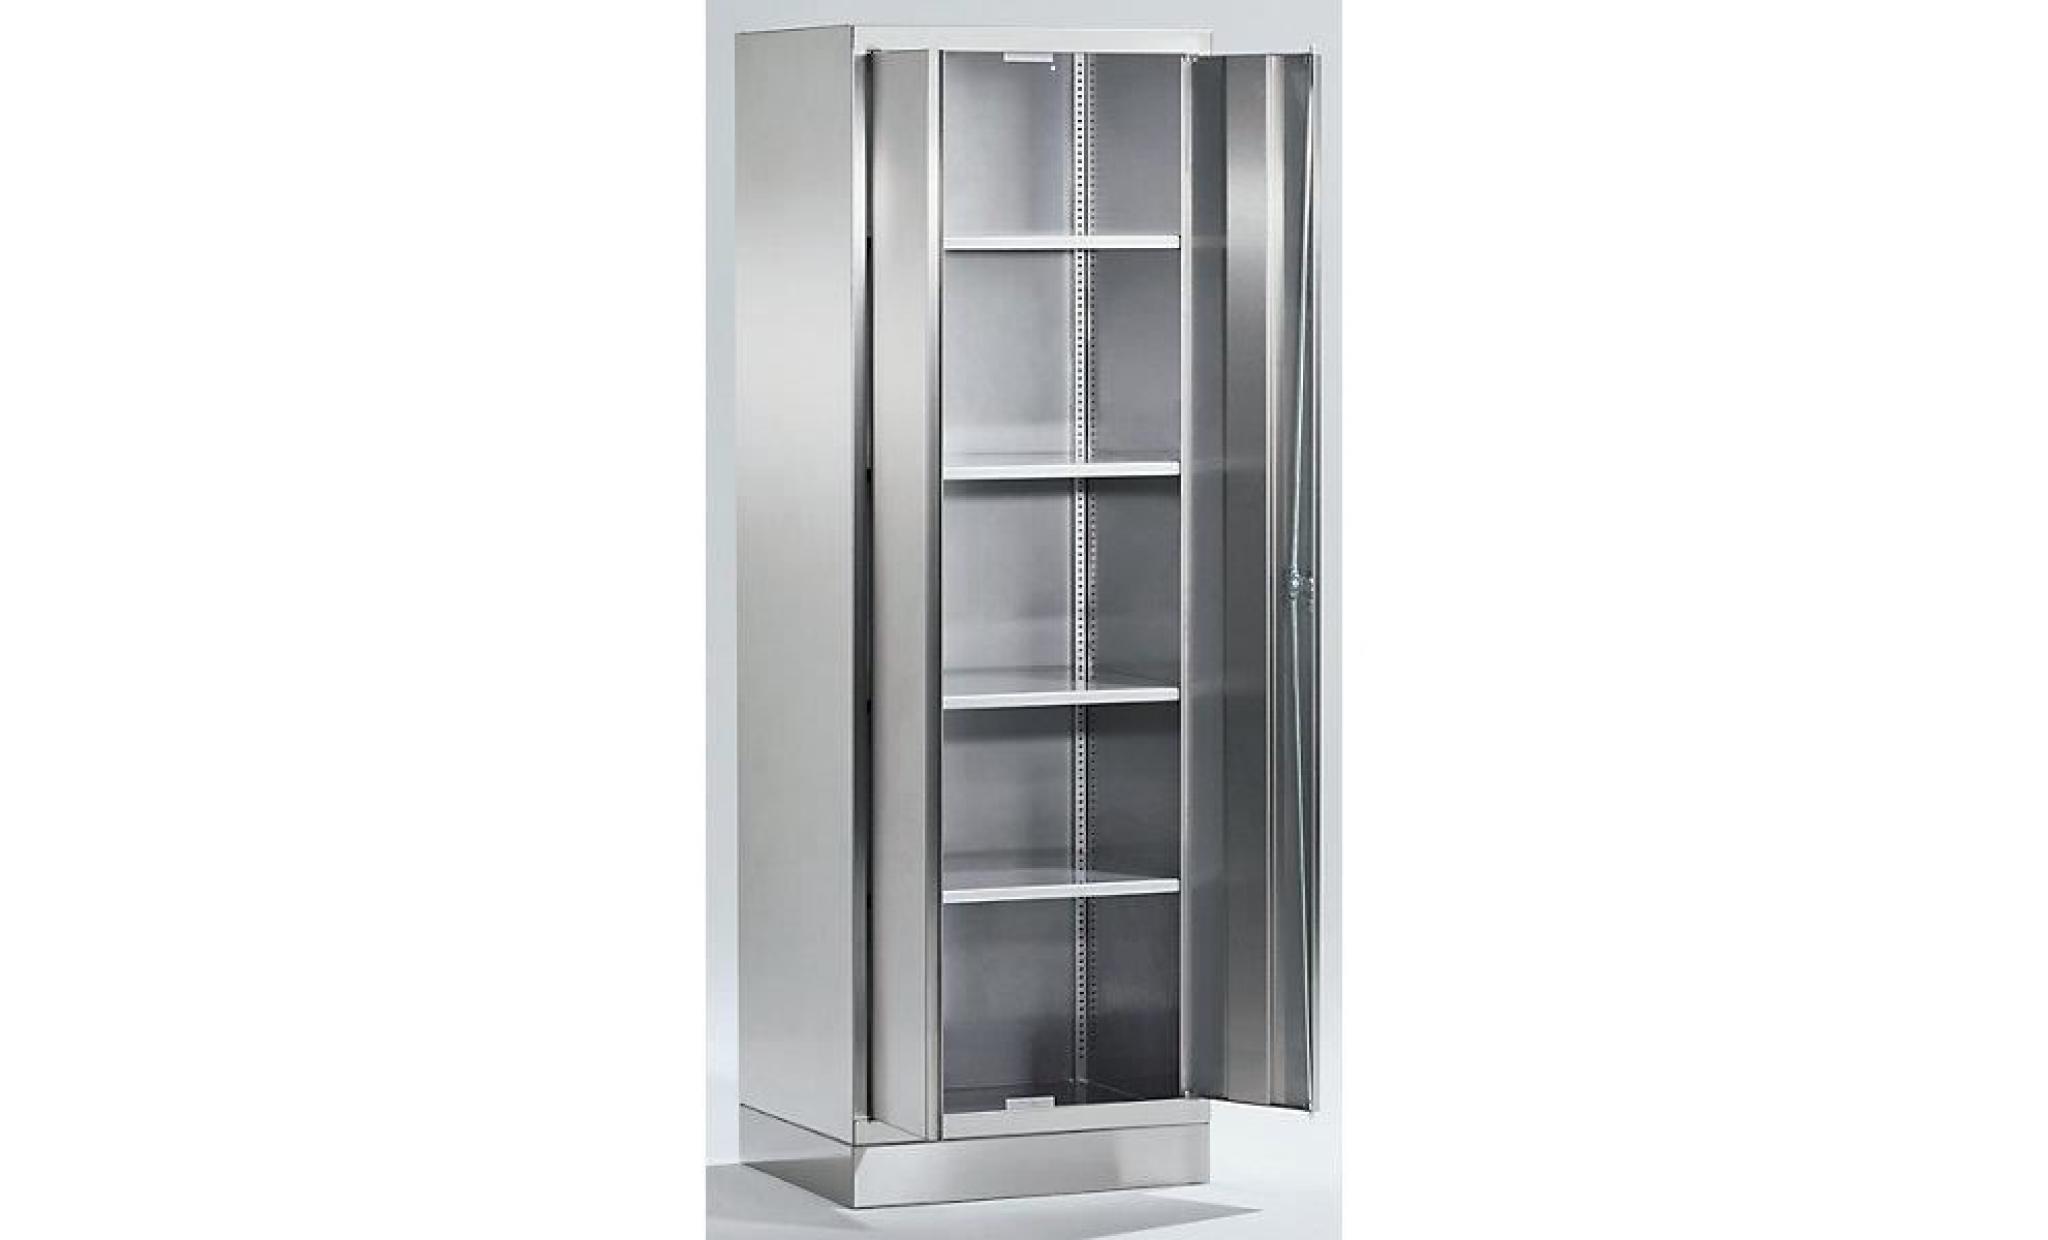 armoire universelle en inox   armoire pour dossiers/de stockage h x l x p 1800 x 600 x 500 mm   armoire armoire de vestiaire armoire